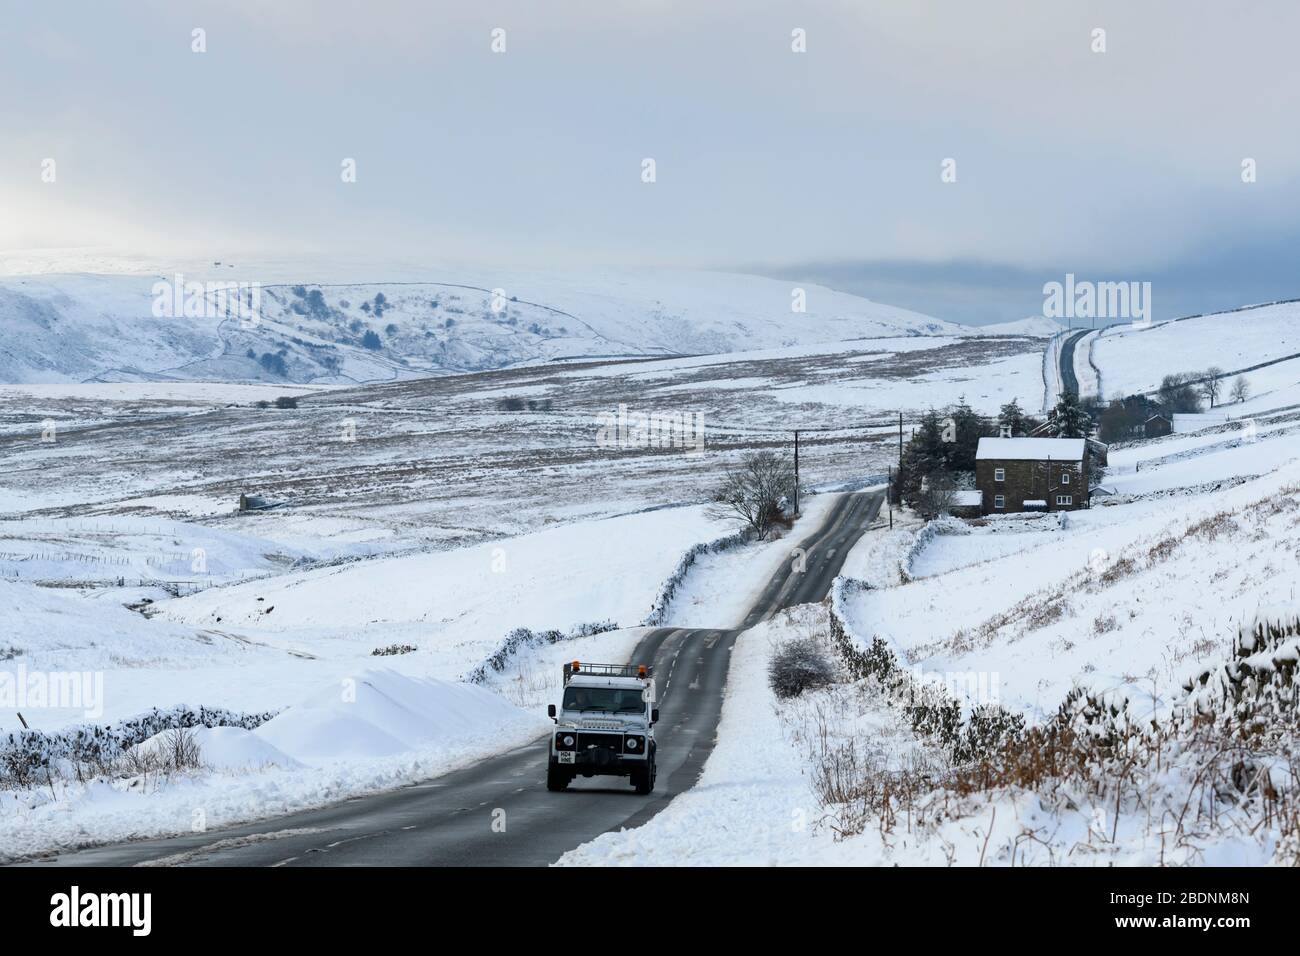 Paysage hivernal enneigé (conduite Land Rover Defender, route nationale, collines hautes, champs de ferme enneigés) - près de Greenhow, Yorkshire Dales Angleterre Royaume-Uni Banque D'Images